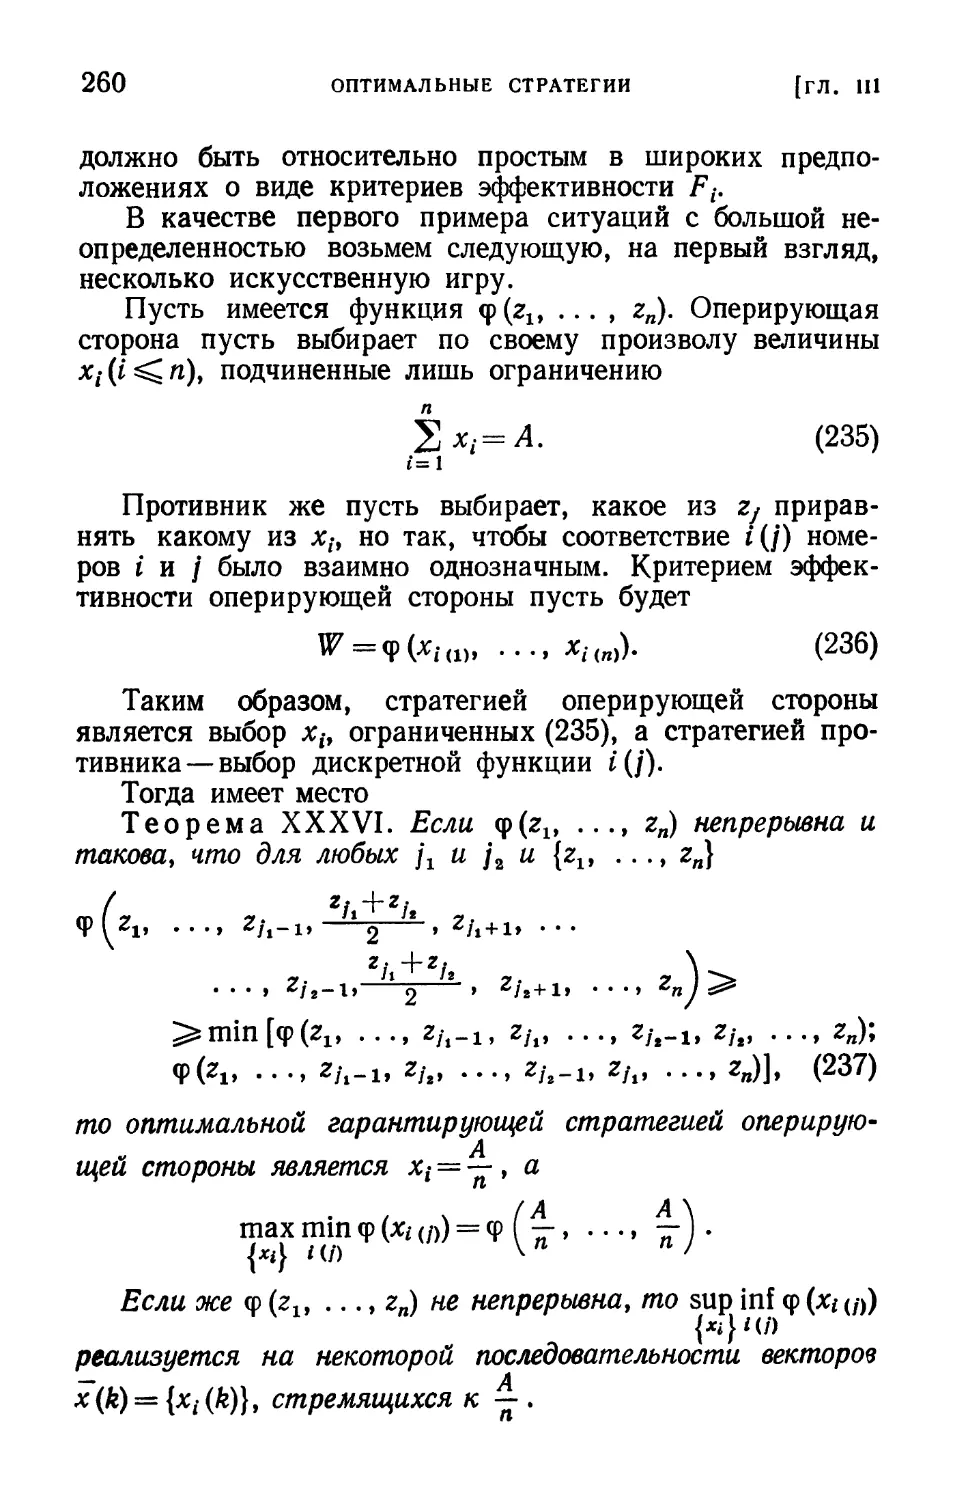 § 20. Две теоремы о распределении ресурса при большой неопределенности